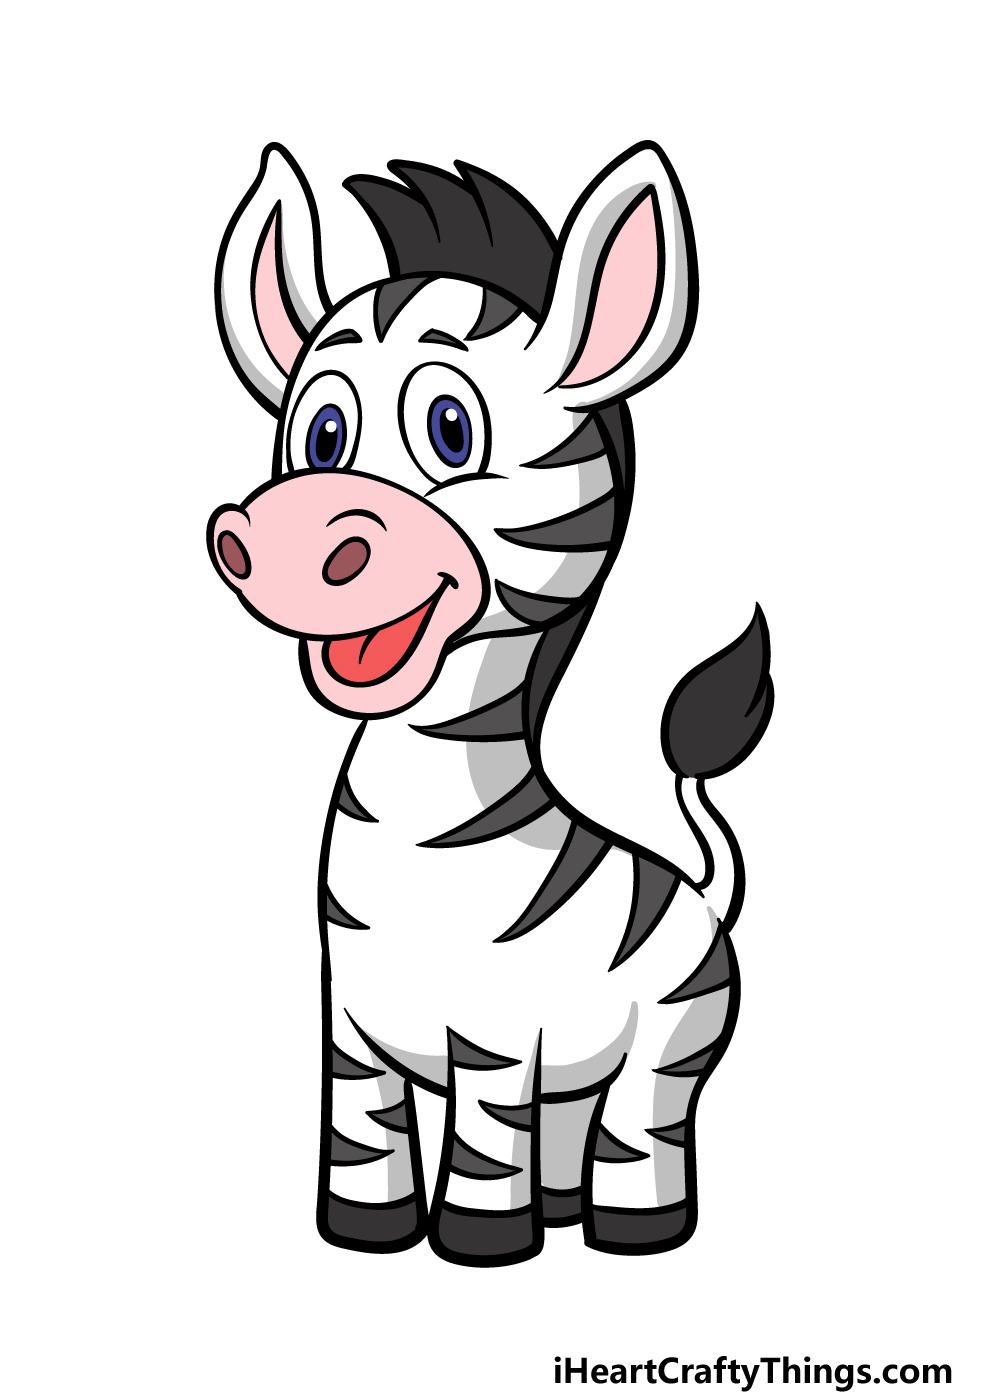 Cartoon Zebra Drawing - How To Draw A Cartoon Zebra Step By Step!